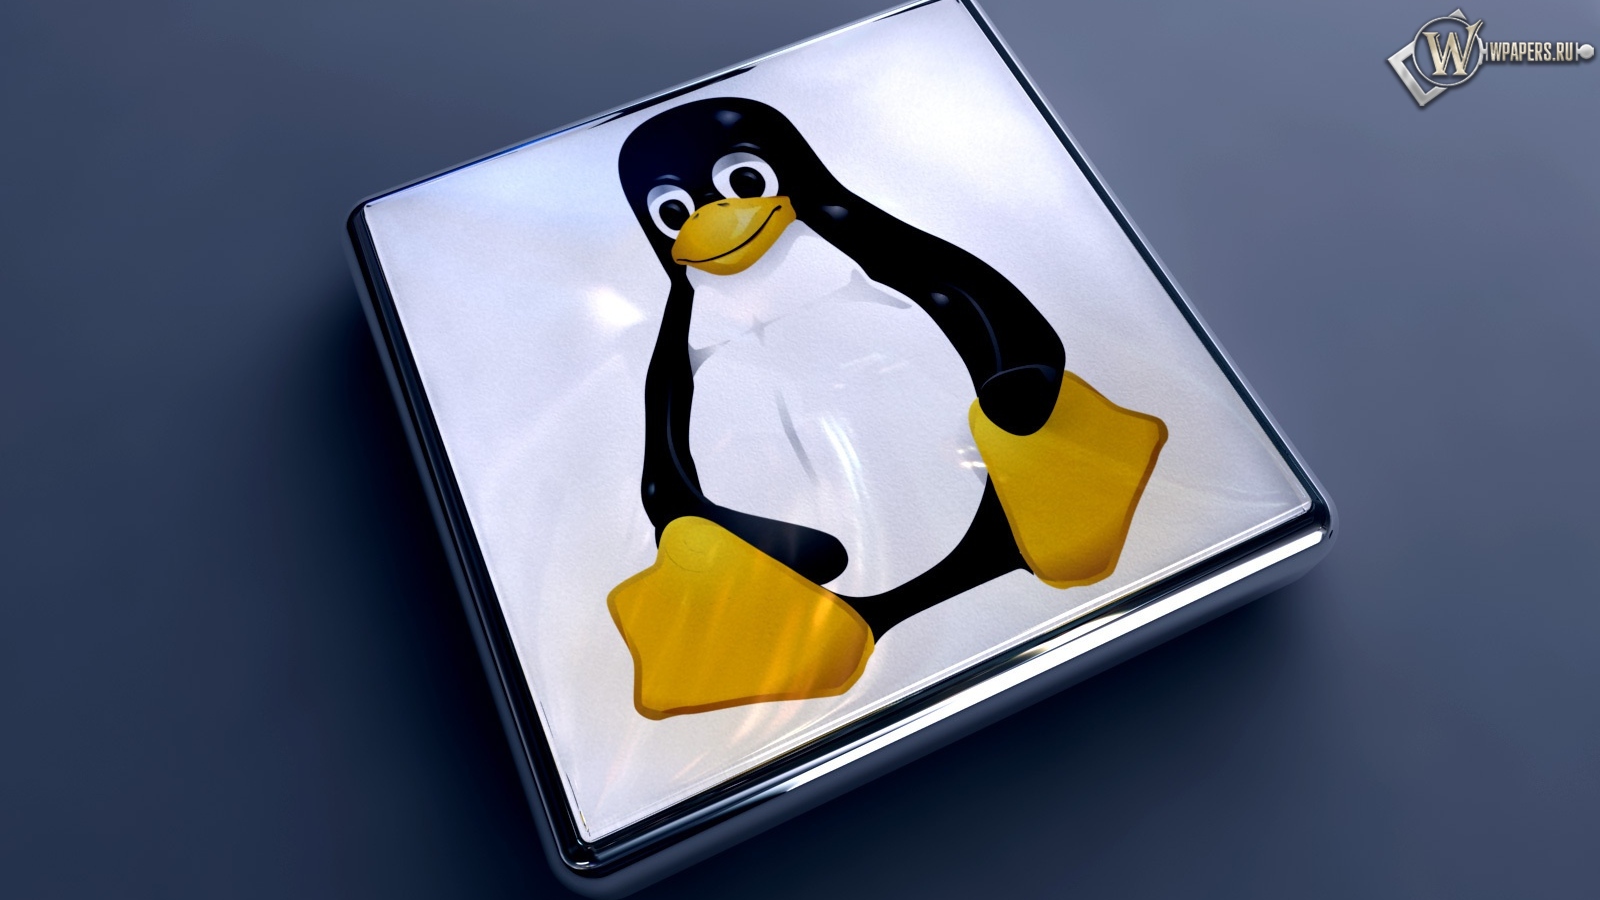 Linux 1600x900